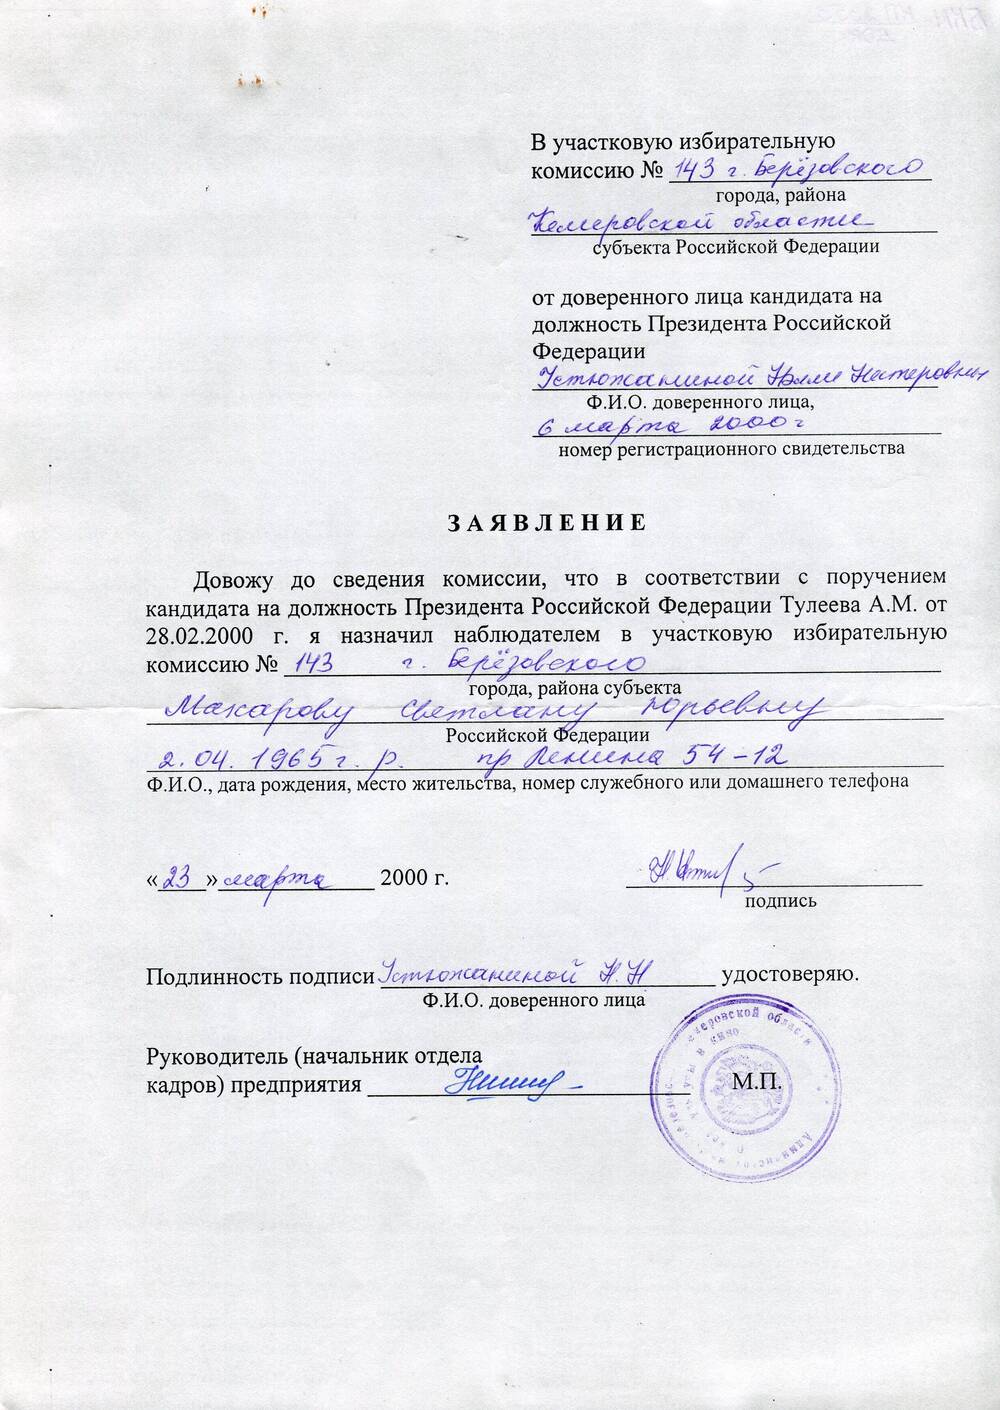 Заявление в участковую избирательную комиссию №143 г. Березовского Кемеровской области о назначении наблюдателем в участковую избирательную комиссию №143 г. Березовского Макаровой Светланы Юрьевны.